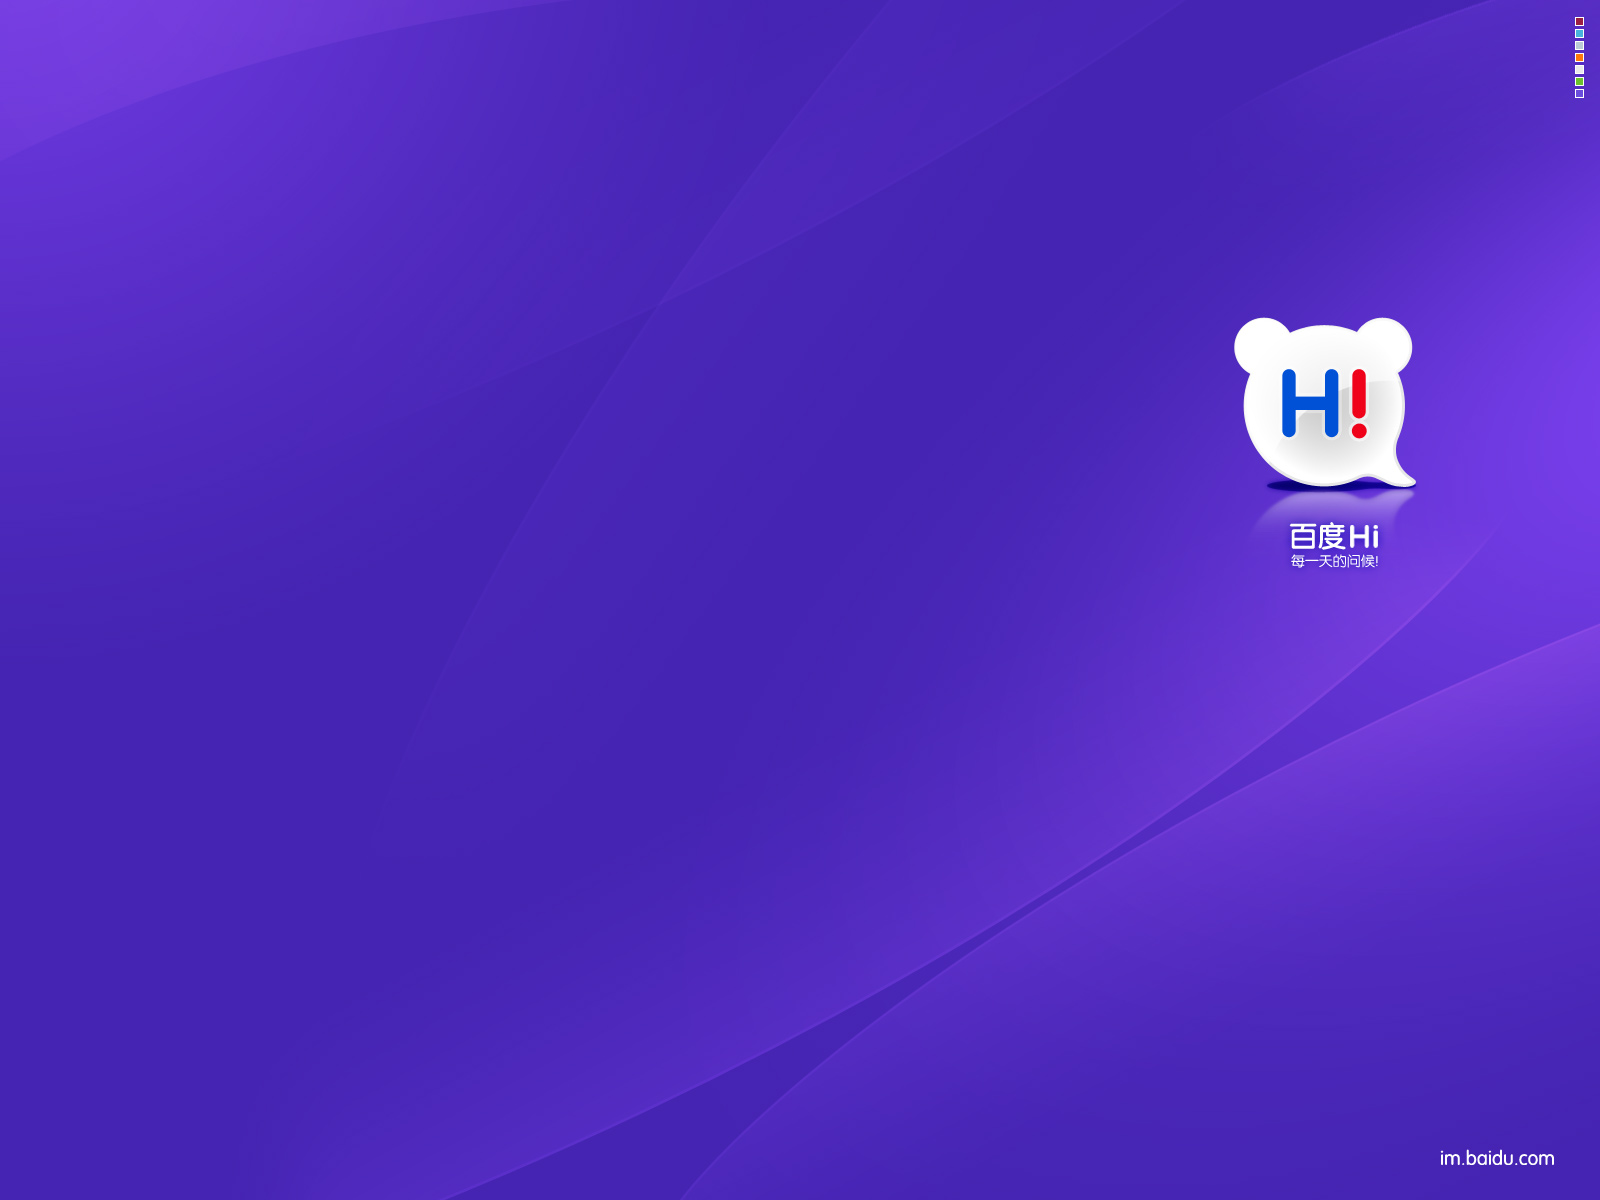 10+ Baidu Fondos de pantalla HD y Fondos de Escritorio